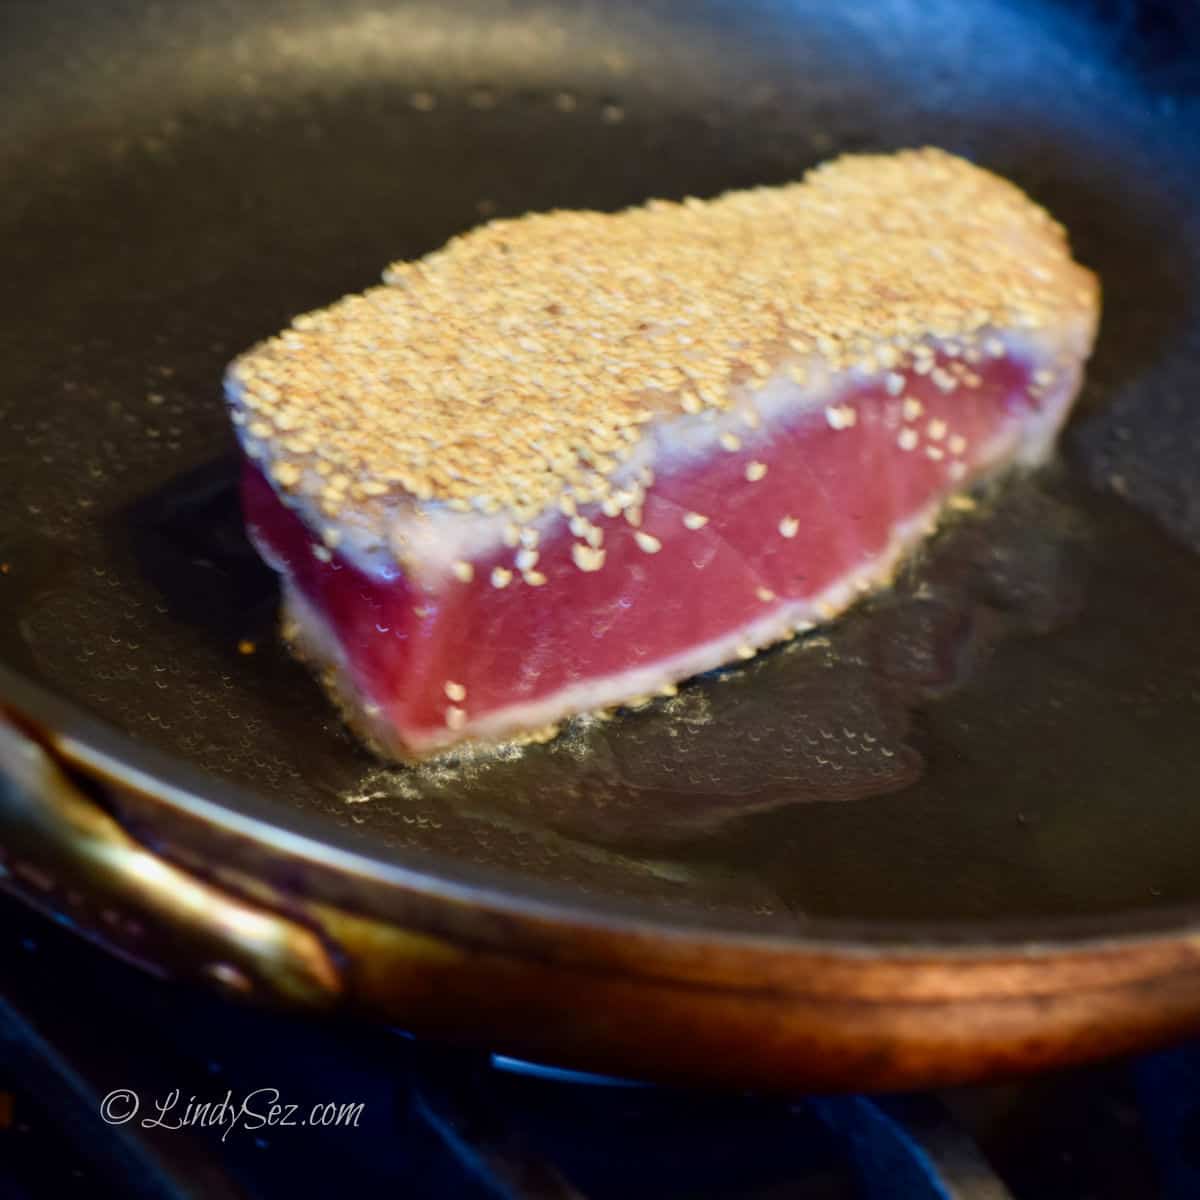 Sesame crusted ahi tuna being seared in a hot skillet.